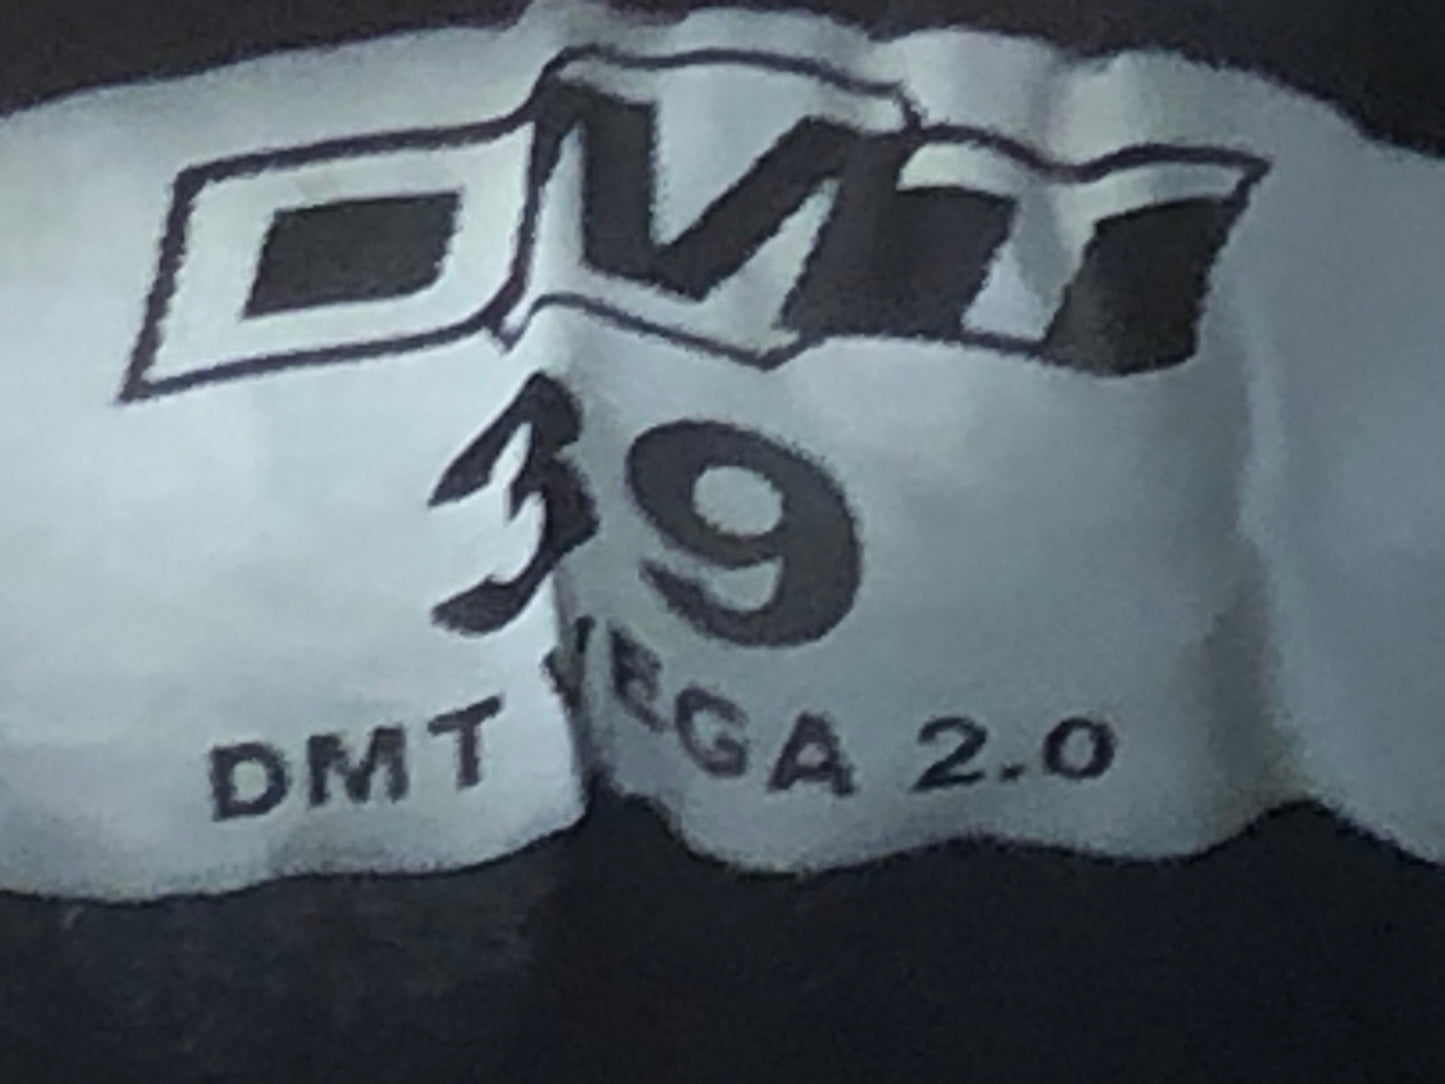 HW326 DMT Vega2.0 カーボンソール ビンディングシューズ 39.0 ホワイト